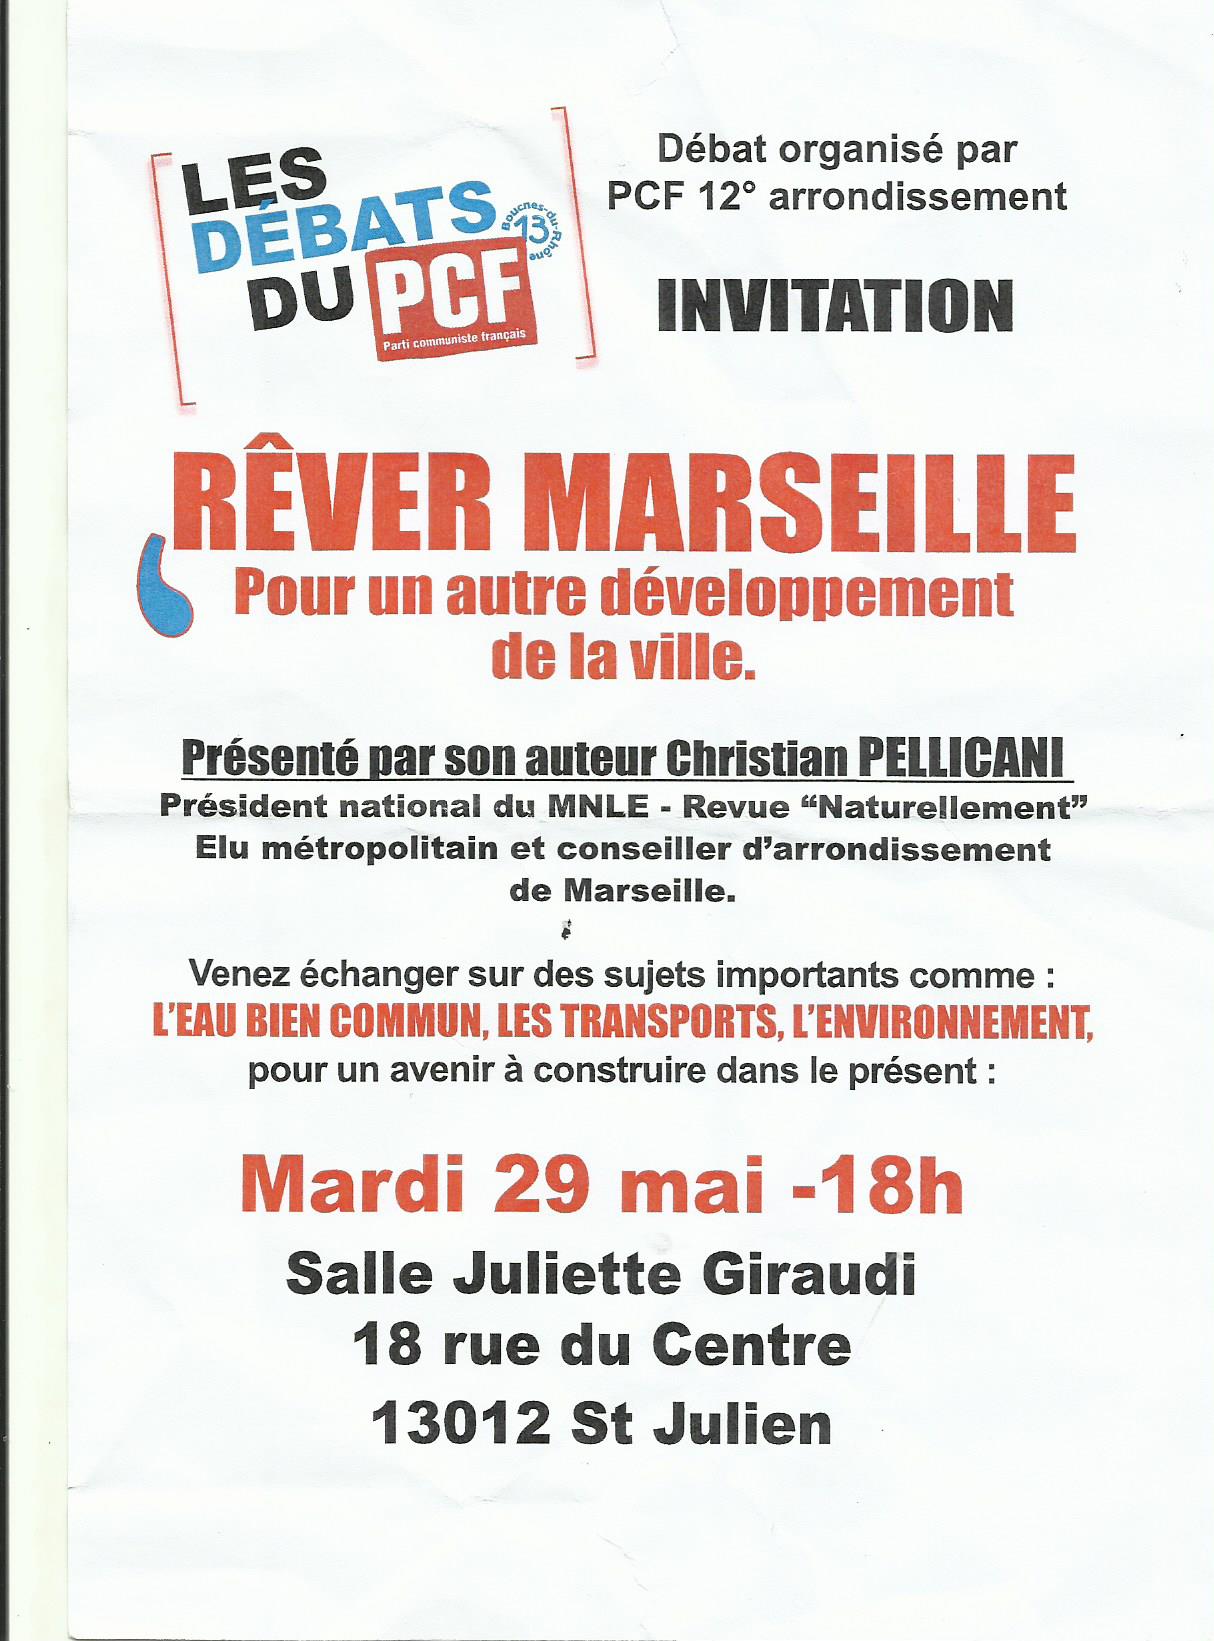 « Rêver Marseille » deux rendez-vous : mardi 29 mai à 18 h 00 au 18, rue du Centre 13012